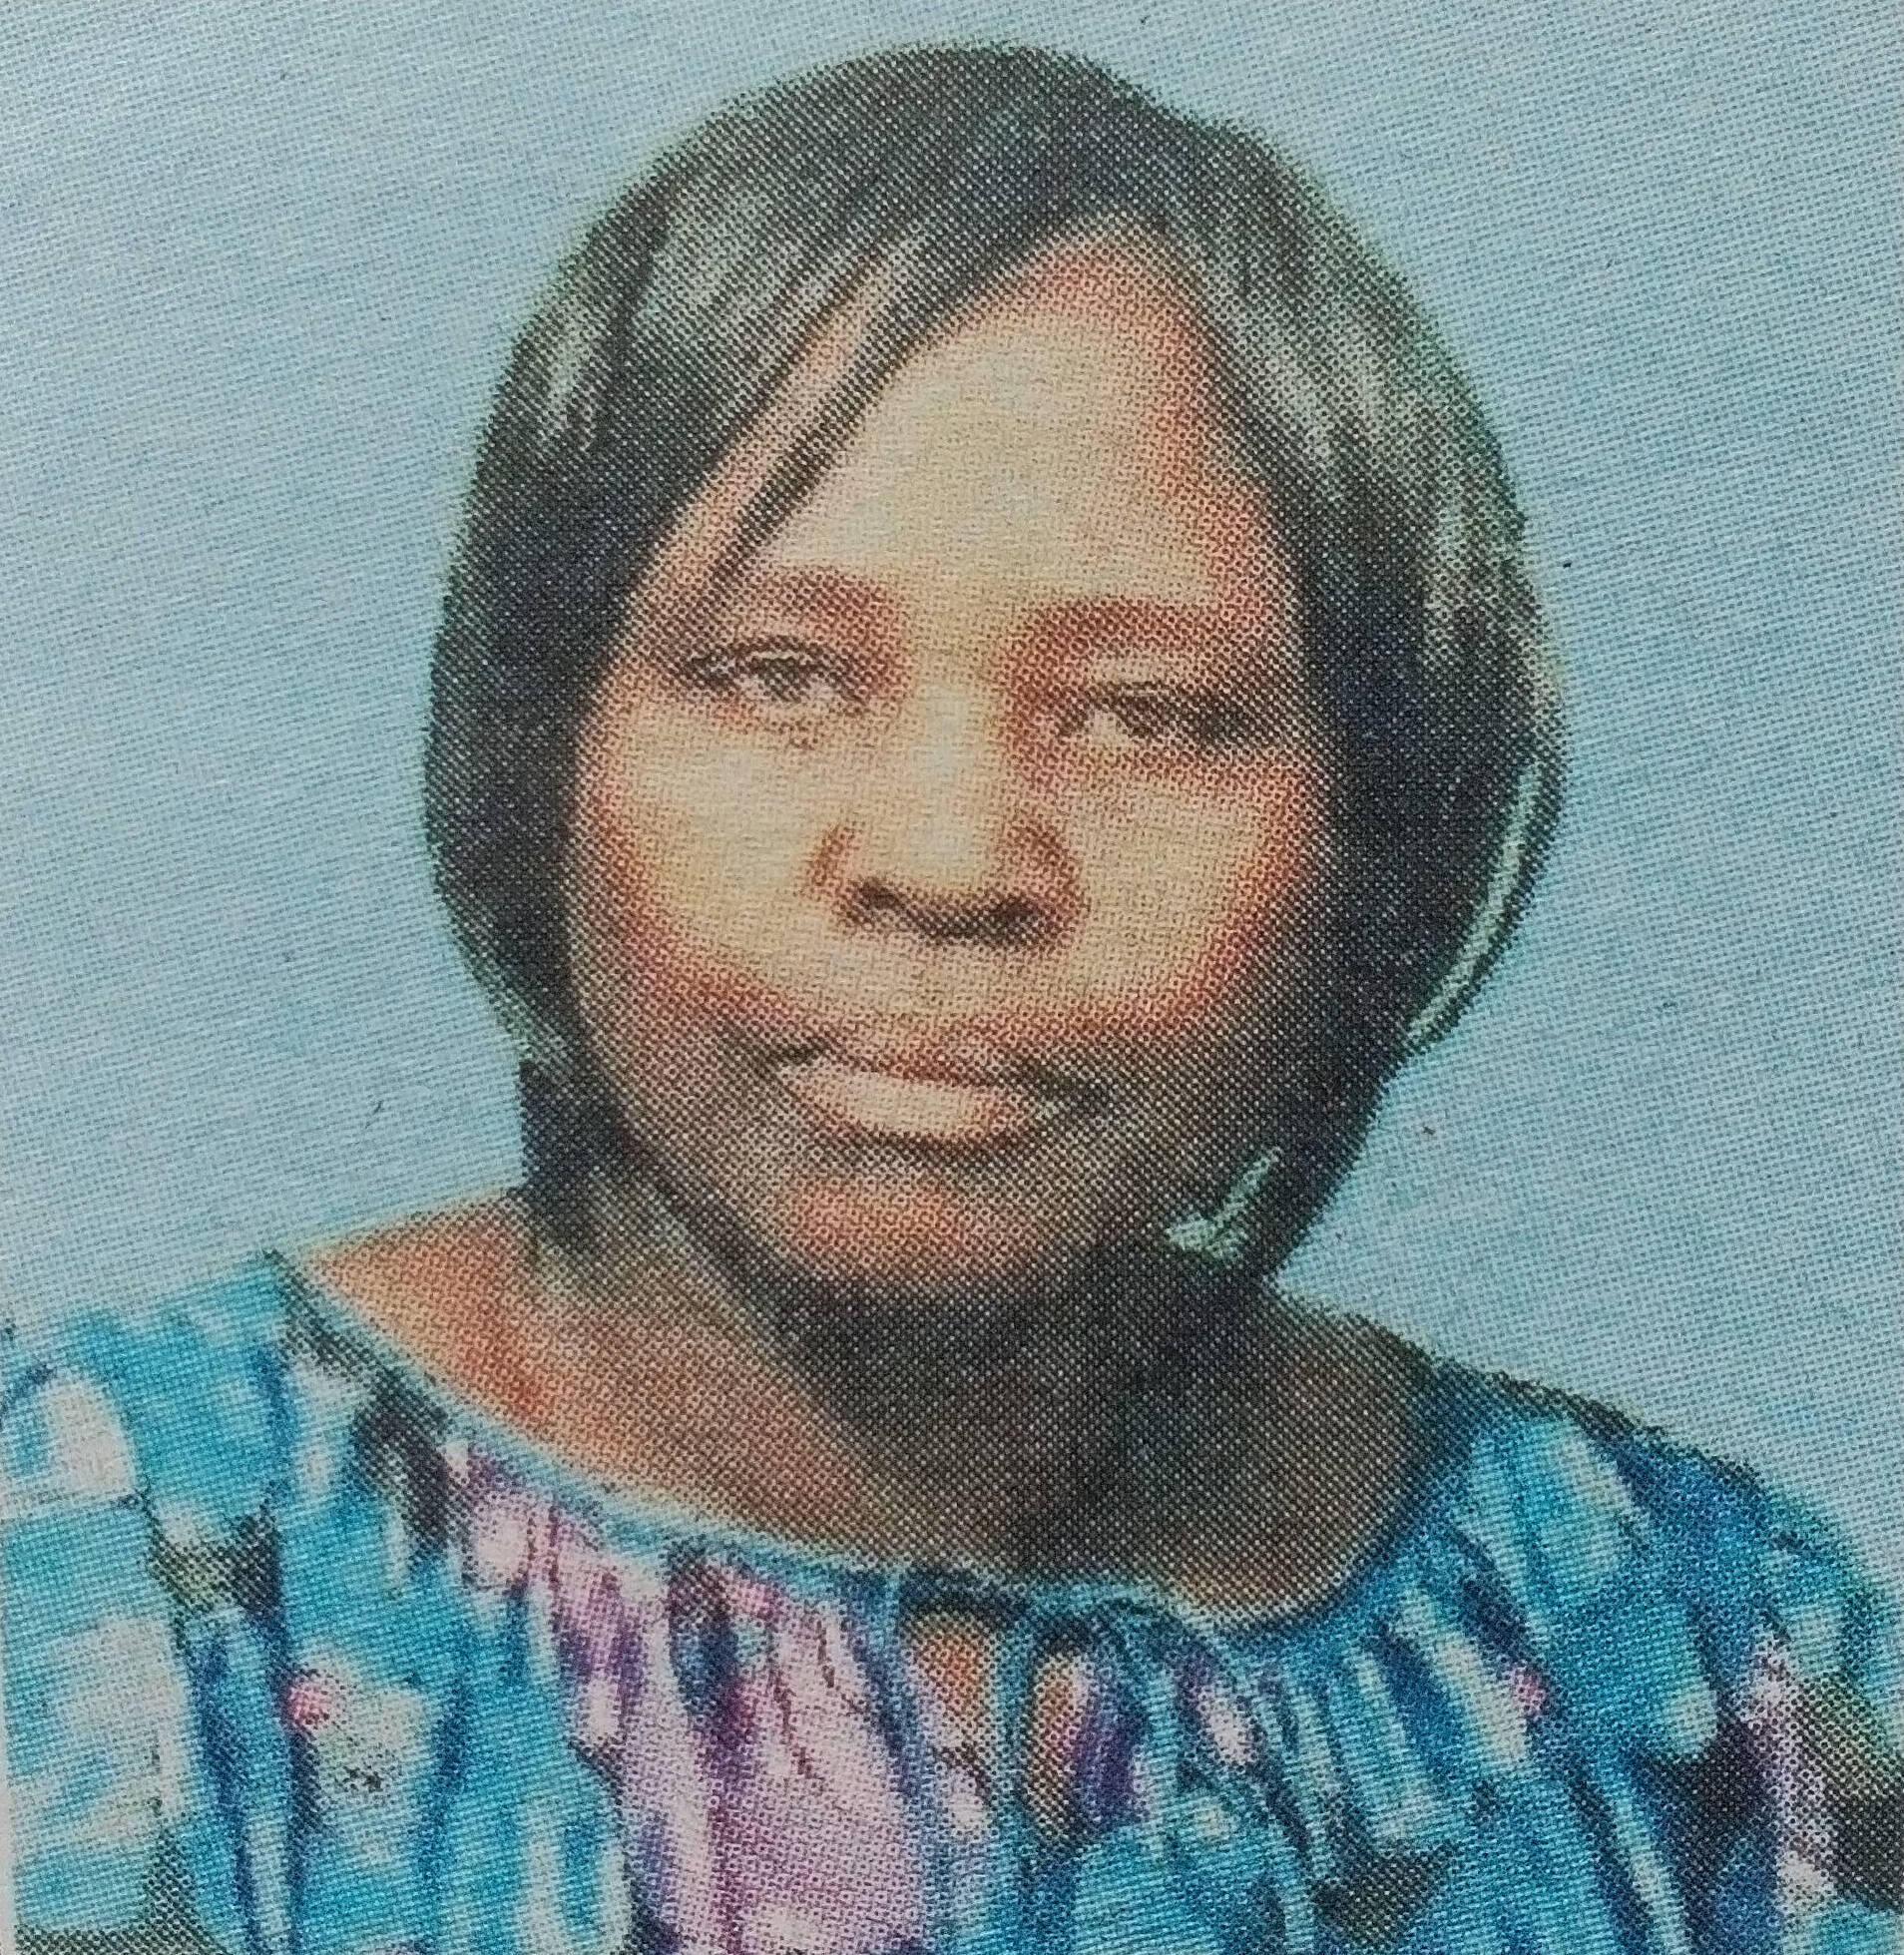 Obituary Image of Lorna N. Ogega Mariaria